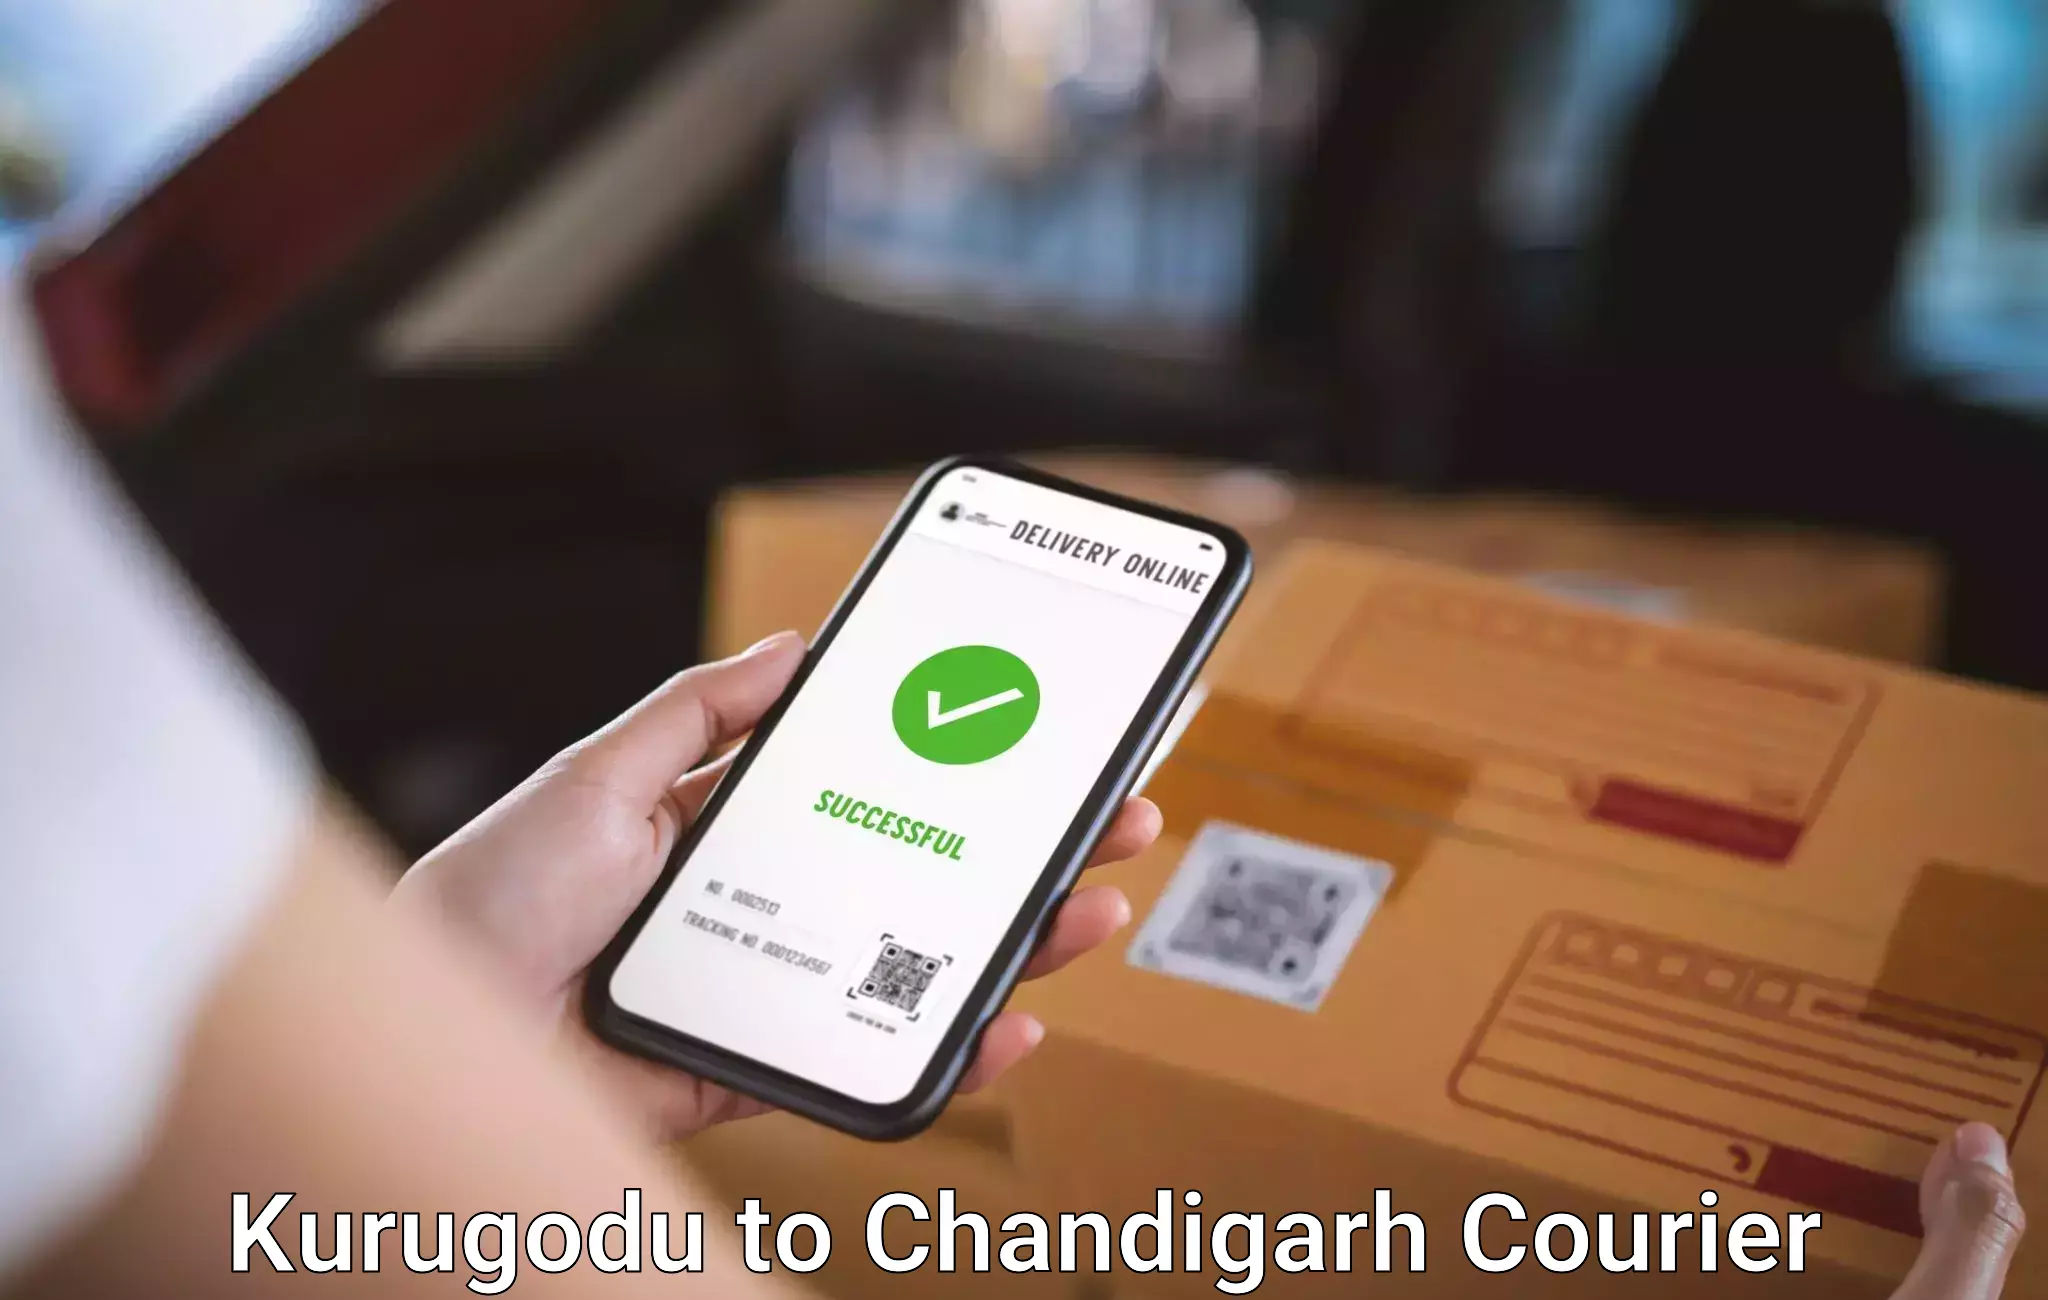 Luggage transport consultancy Kurugodu to Chandigarh